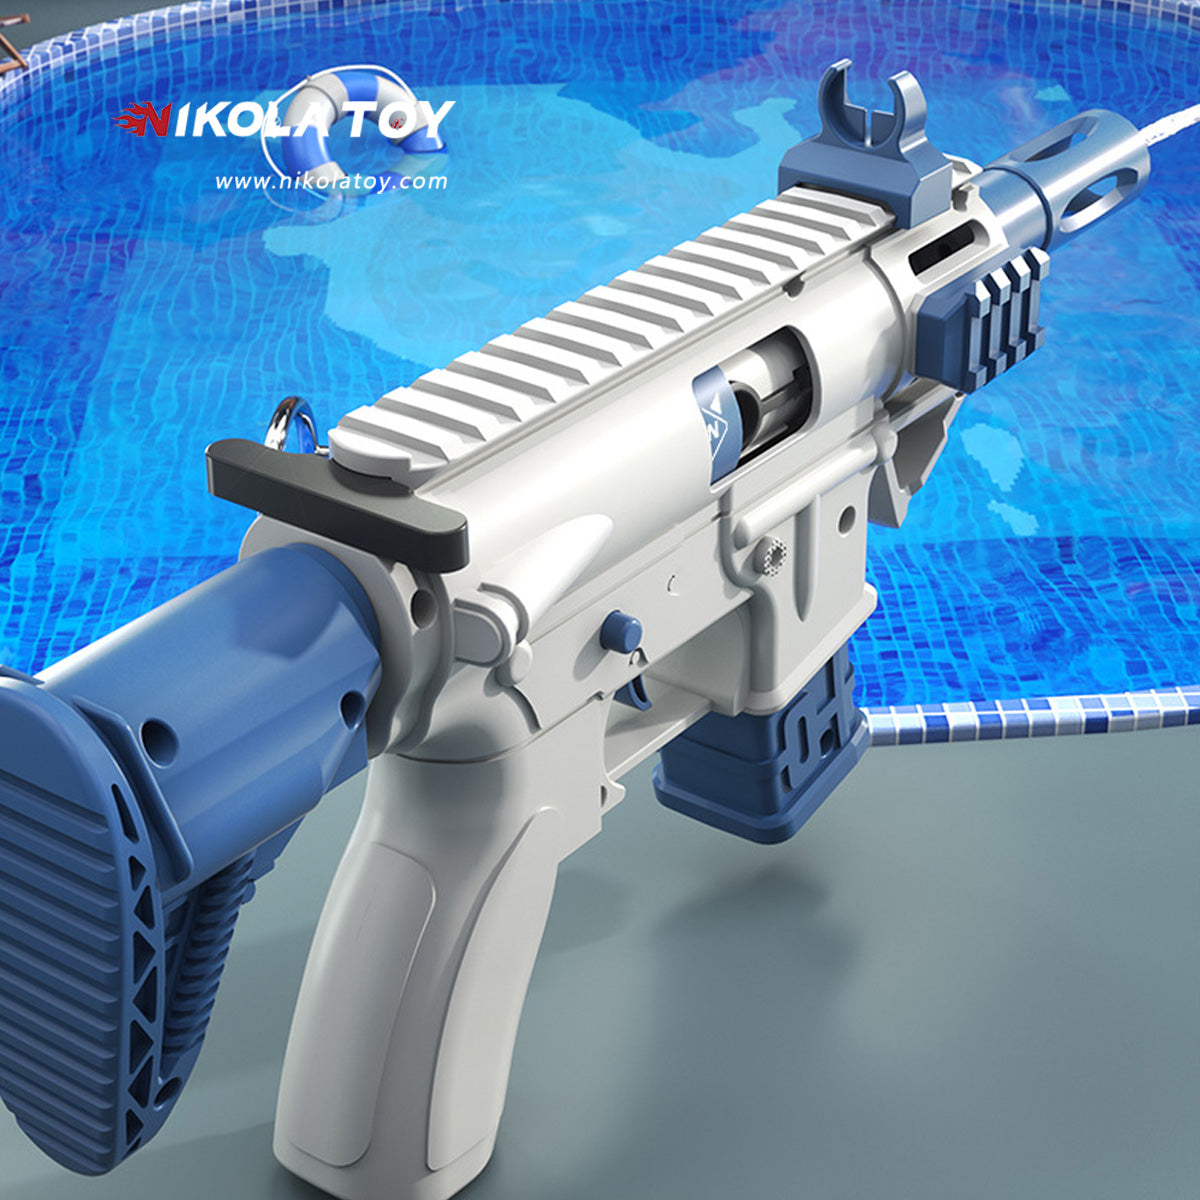 Cute HK416 MINI water gun